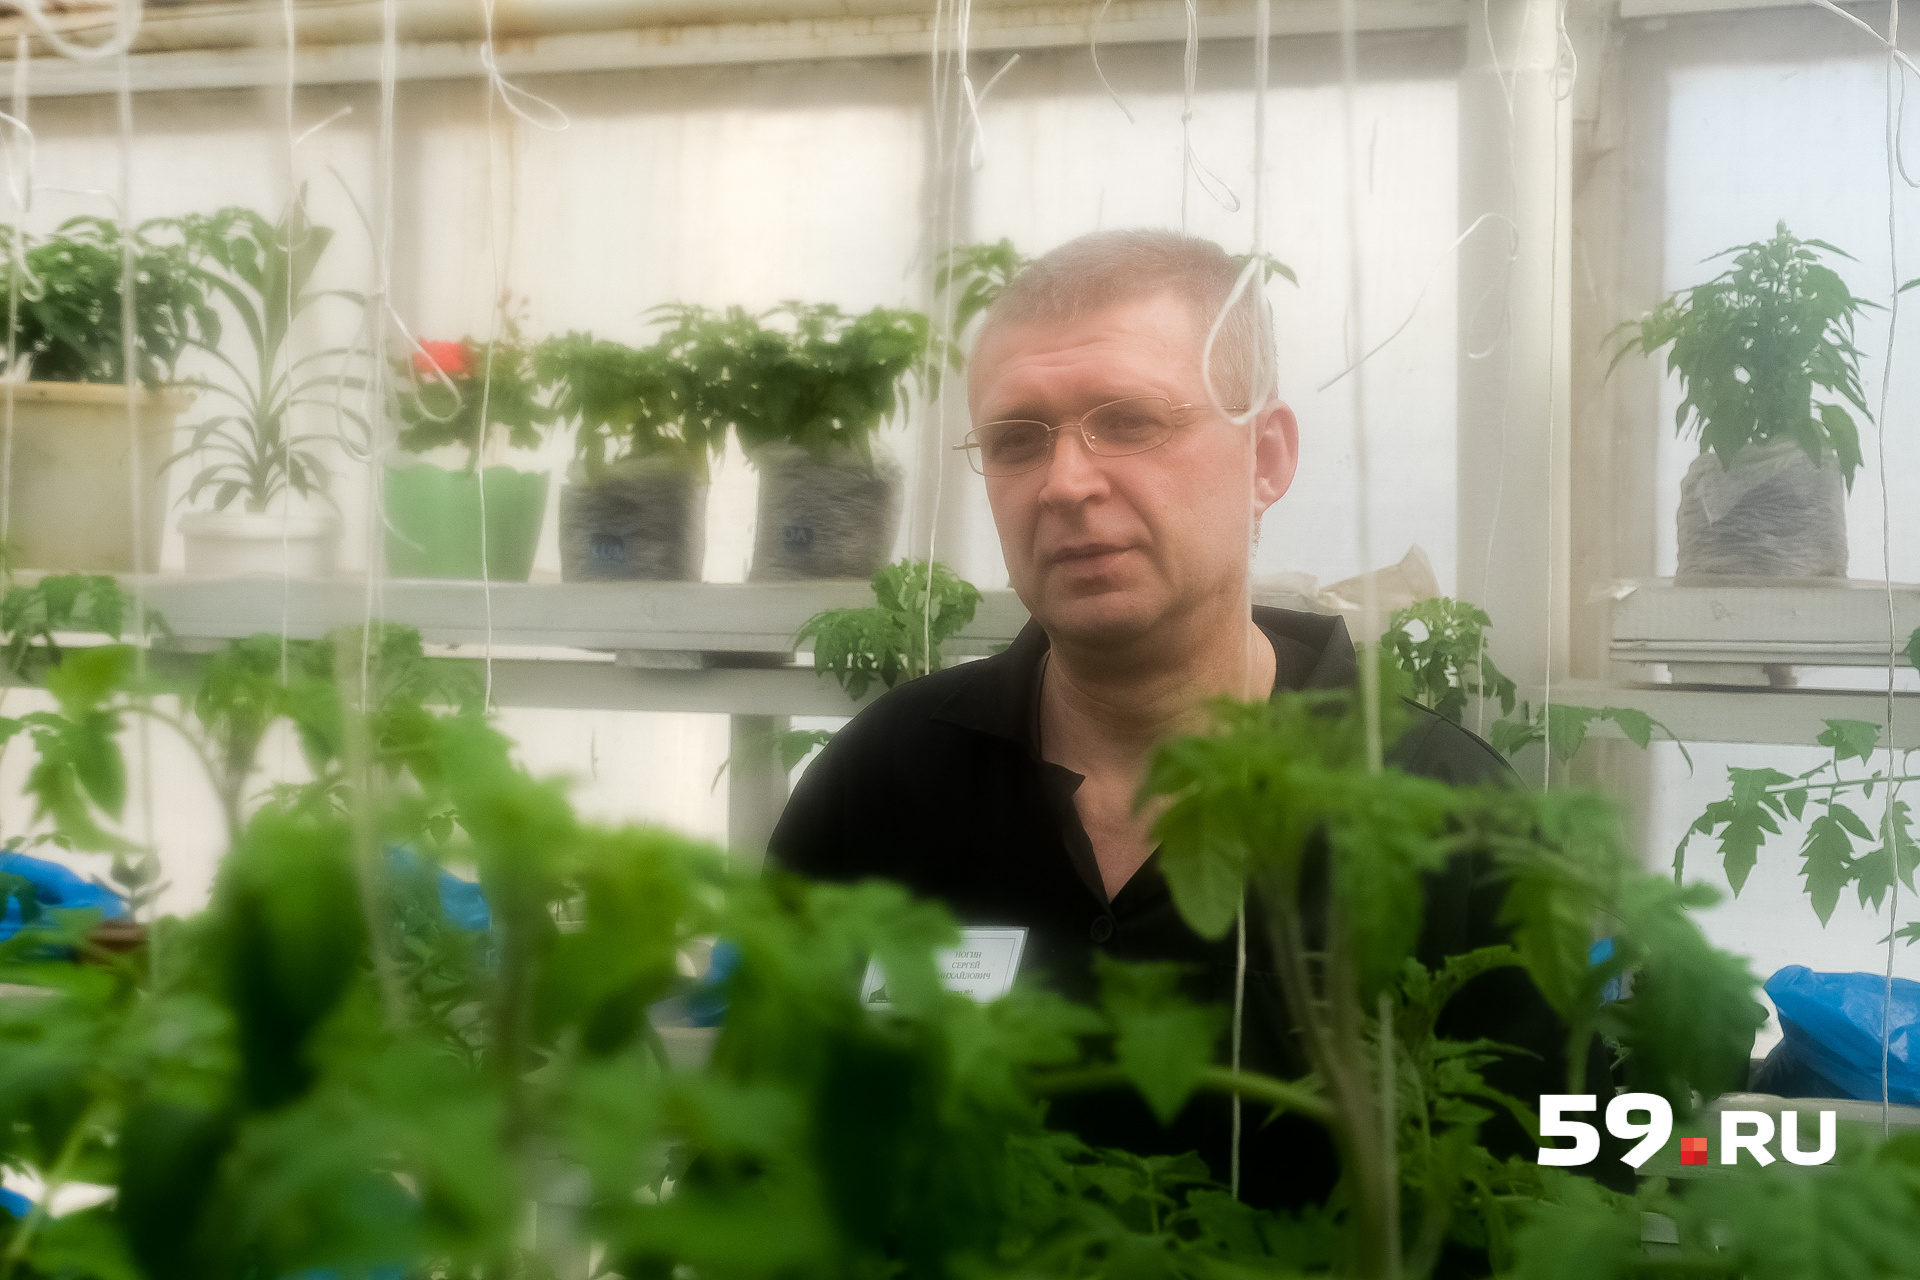 Сергей выращивает здесь овощи, по образованию осужденный — агроном